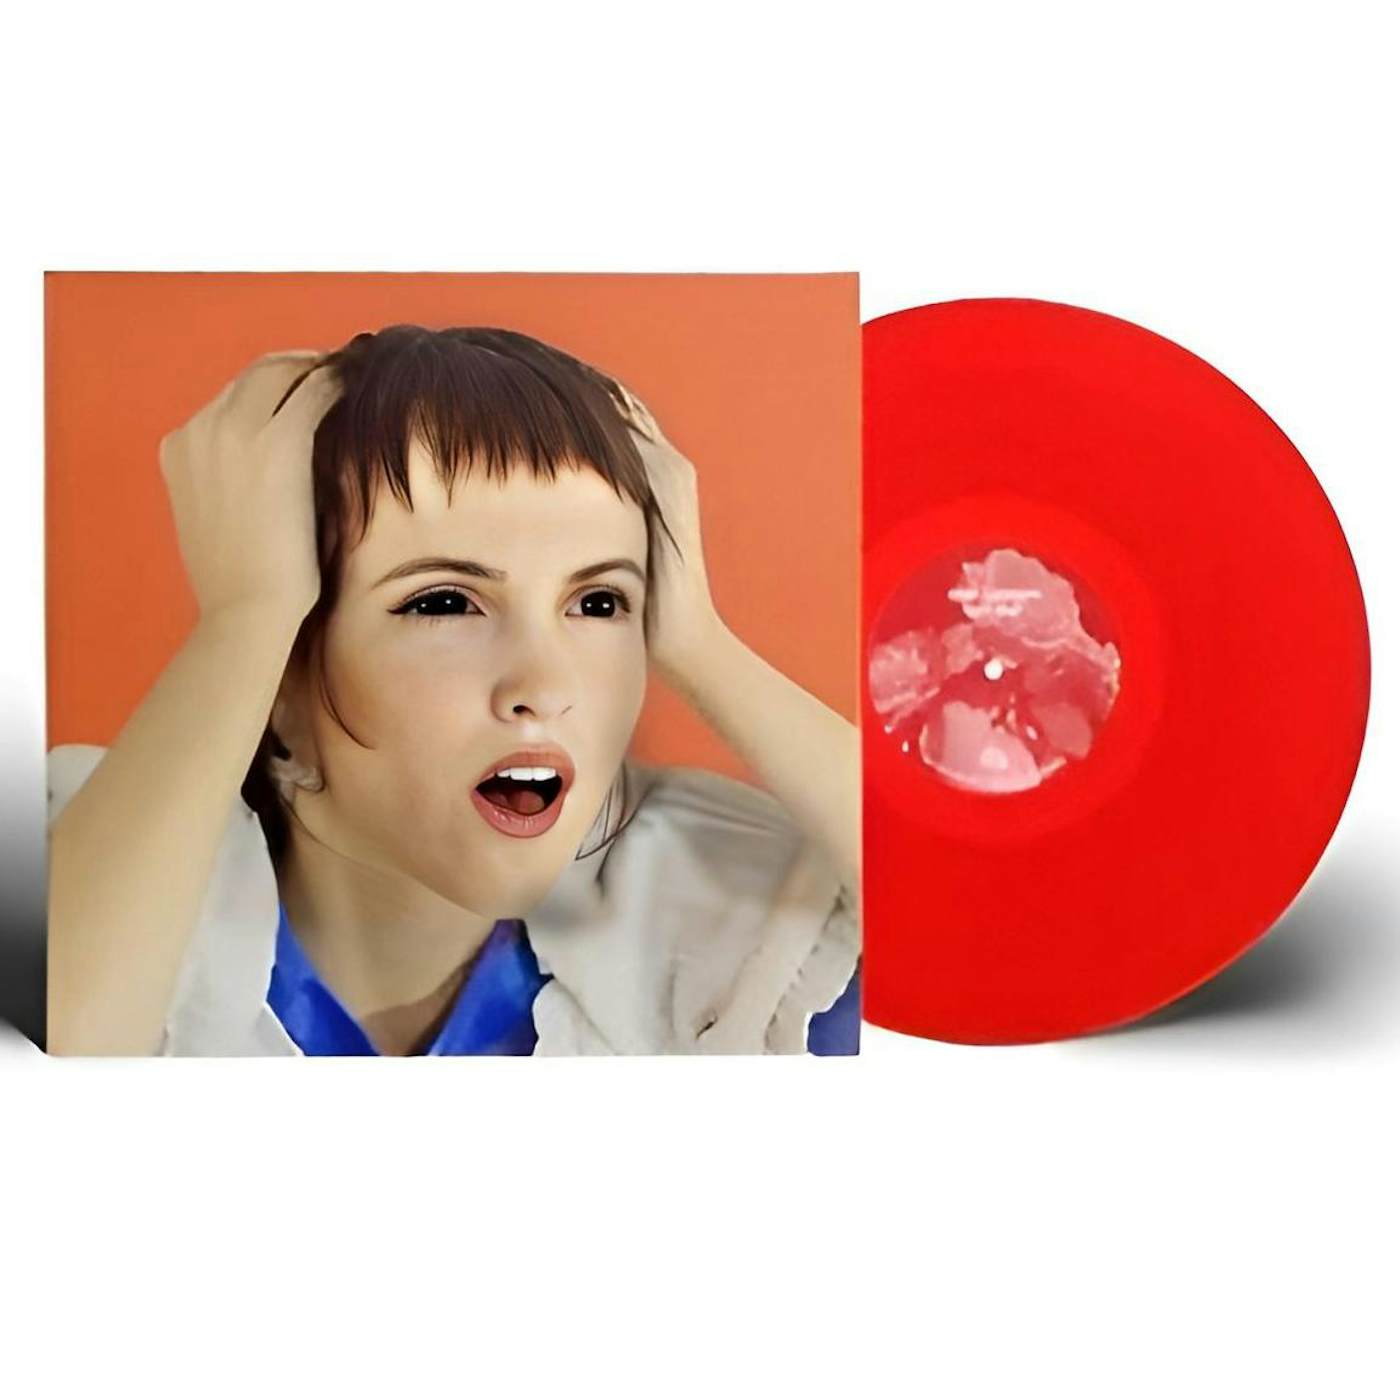 Dana Gavanski Late Slap Vinyl Record